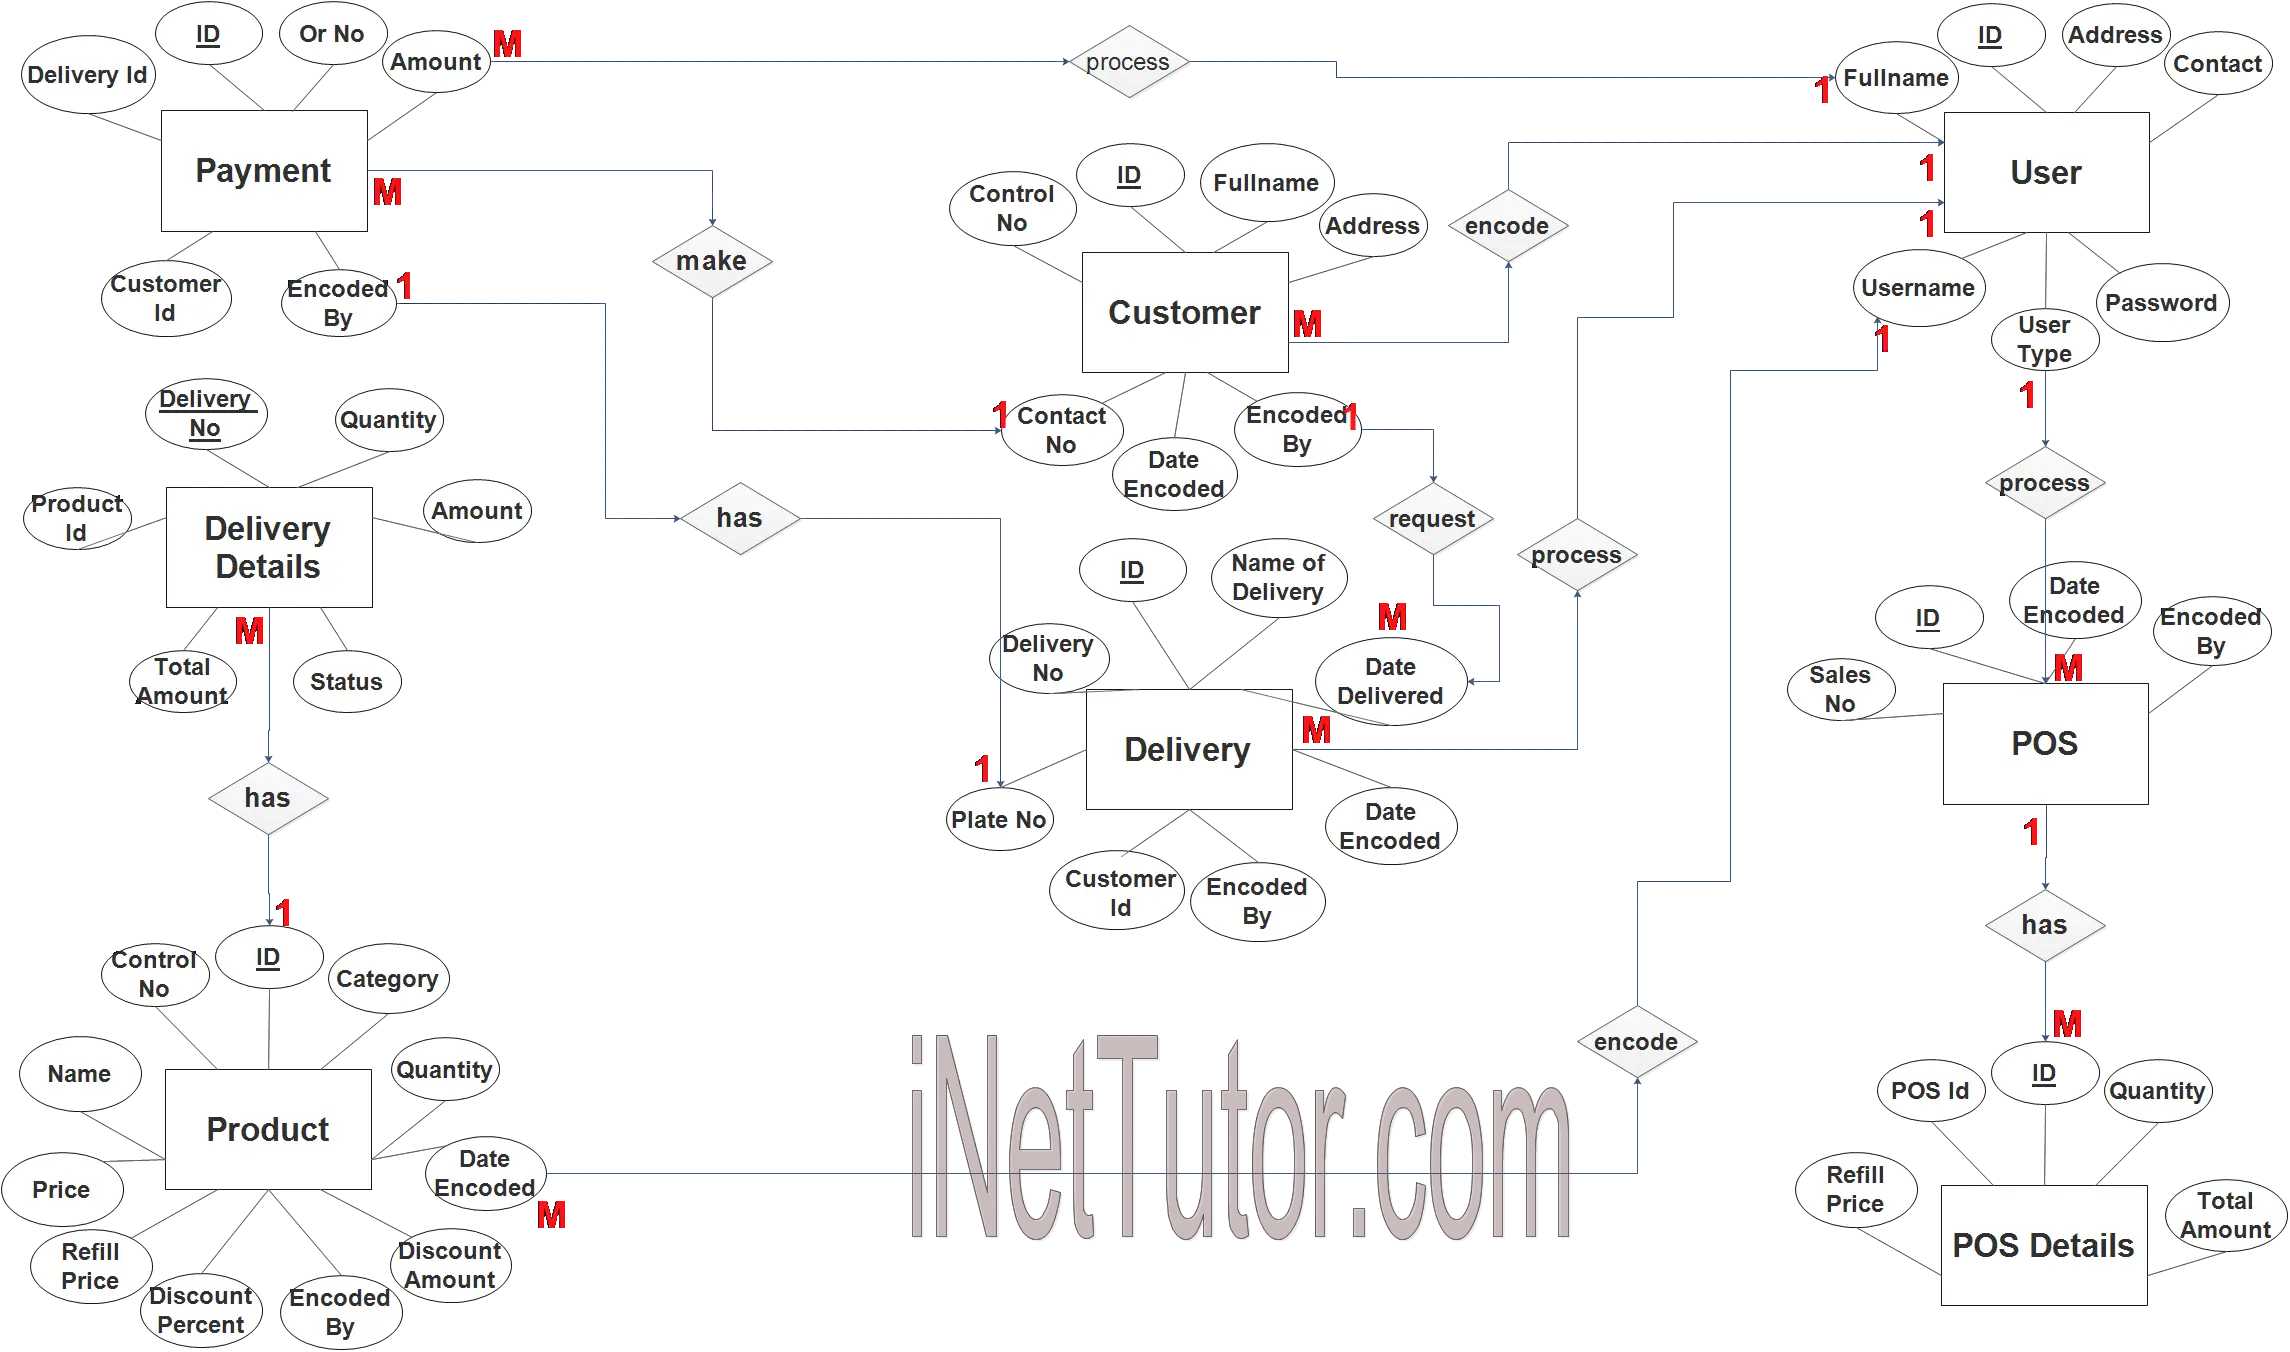 Water Refilling System ER Diagram - Step 3 Complete ERD